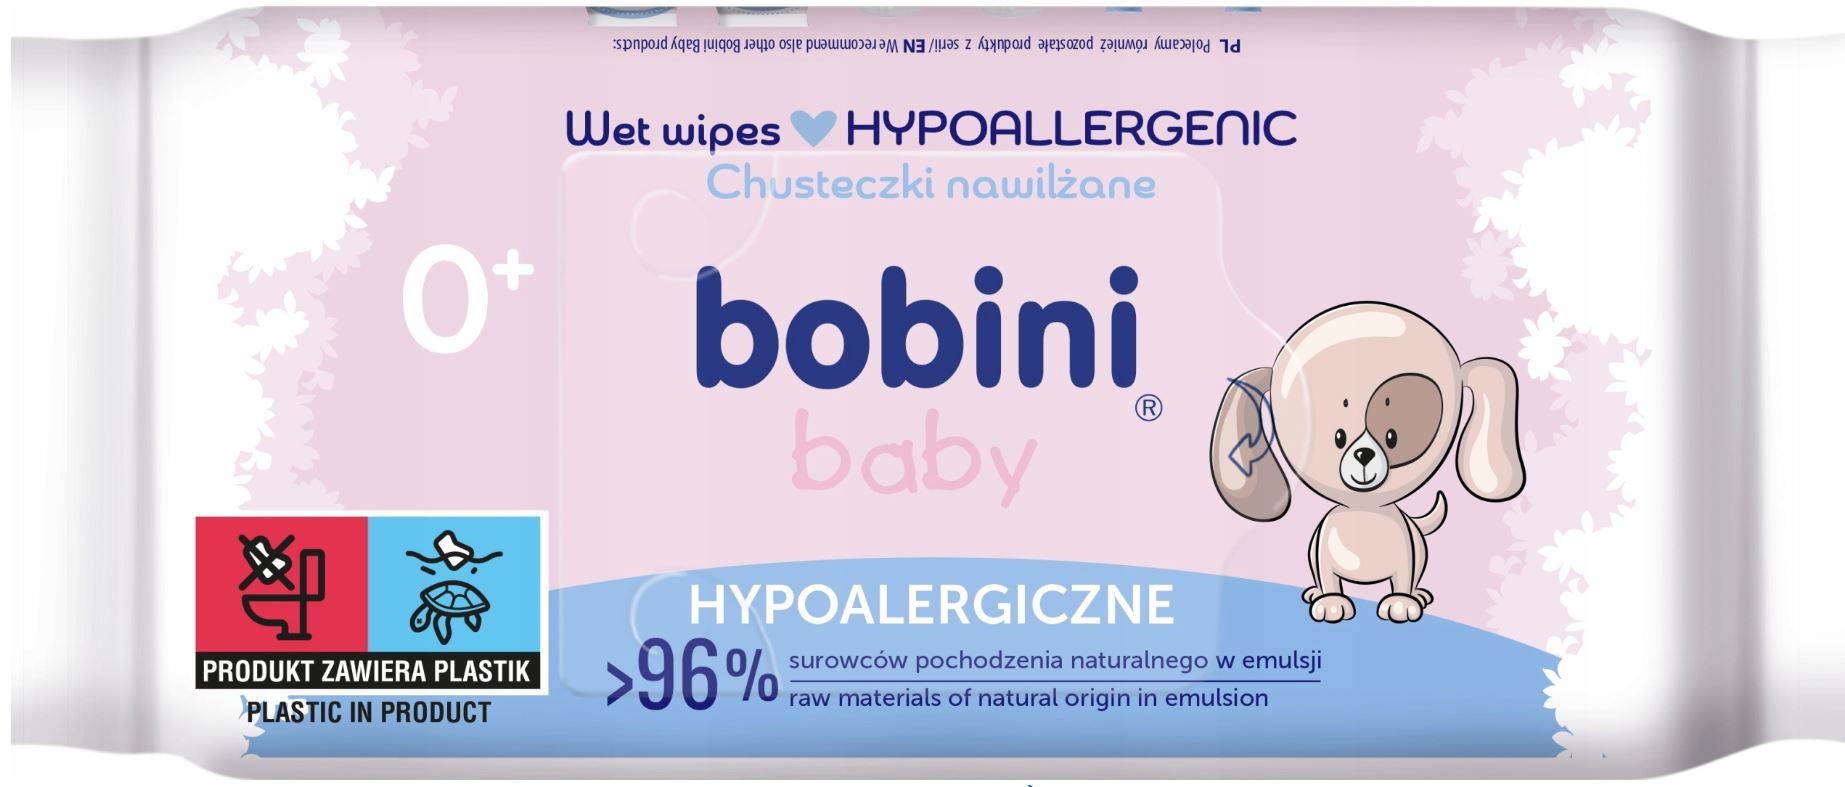 Bobini Baby Hypoalergiczne chusteczki nawilżane dla dzieci, 60sztuk